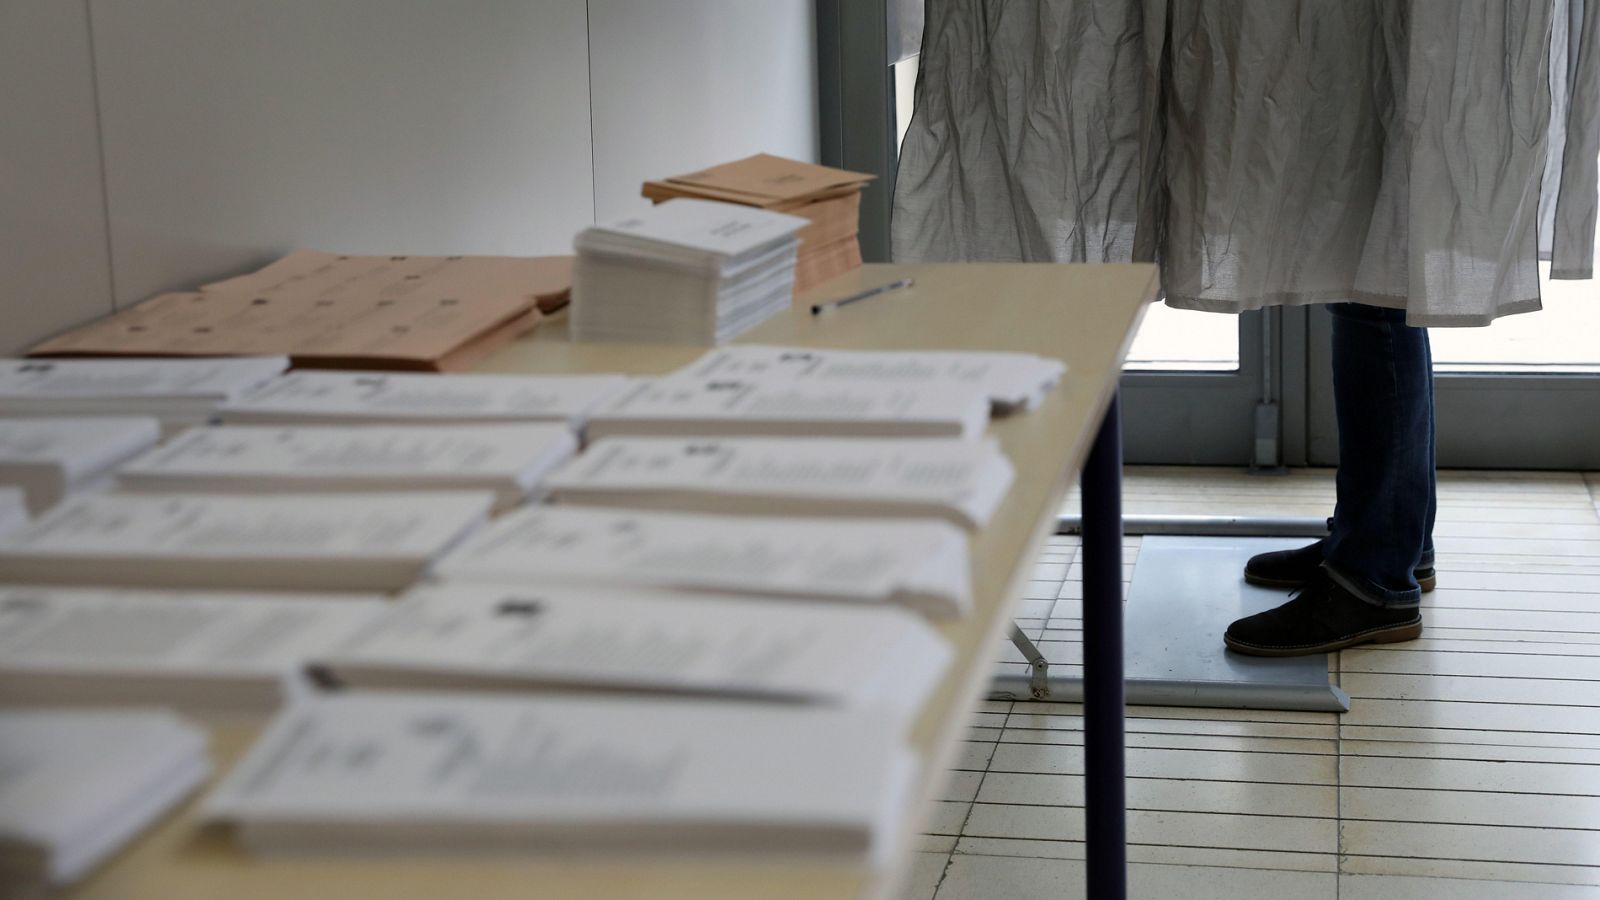 Elecciones 2019: La jornada electoral se inicia con normalidad con la apertura del 100% de las mesas - RTVE.es